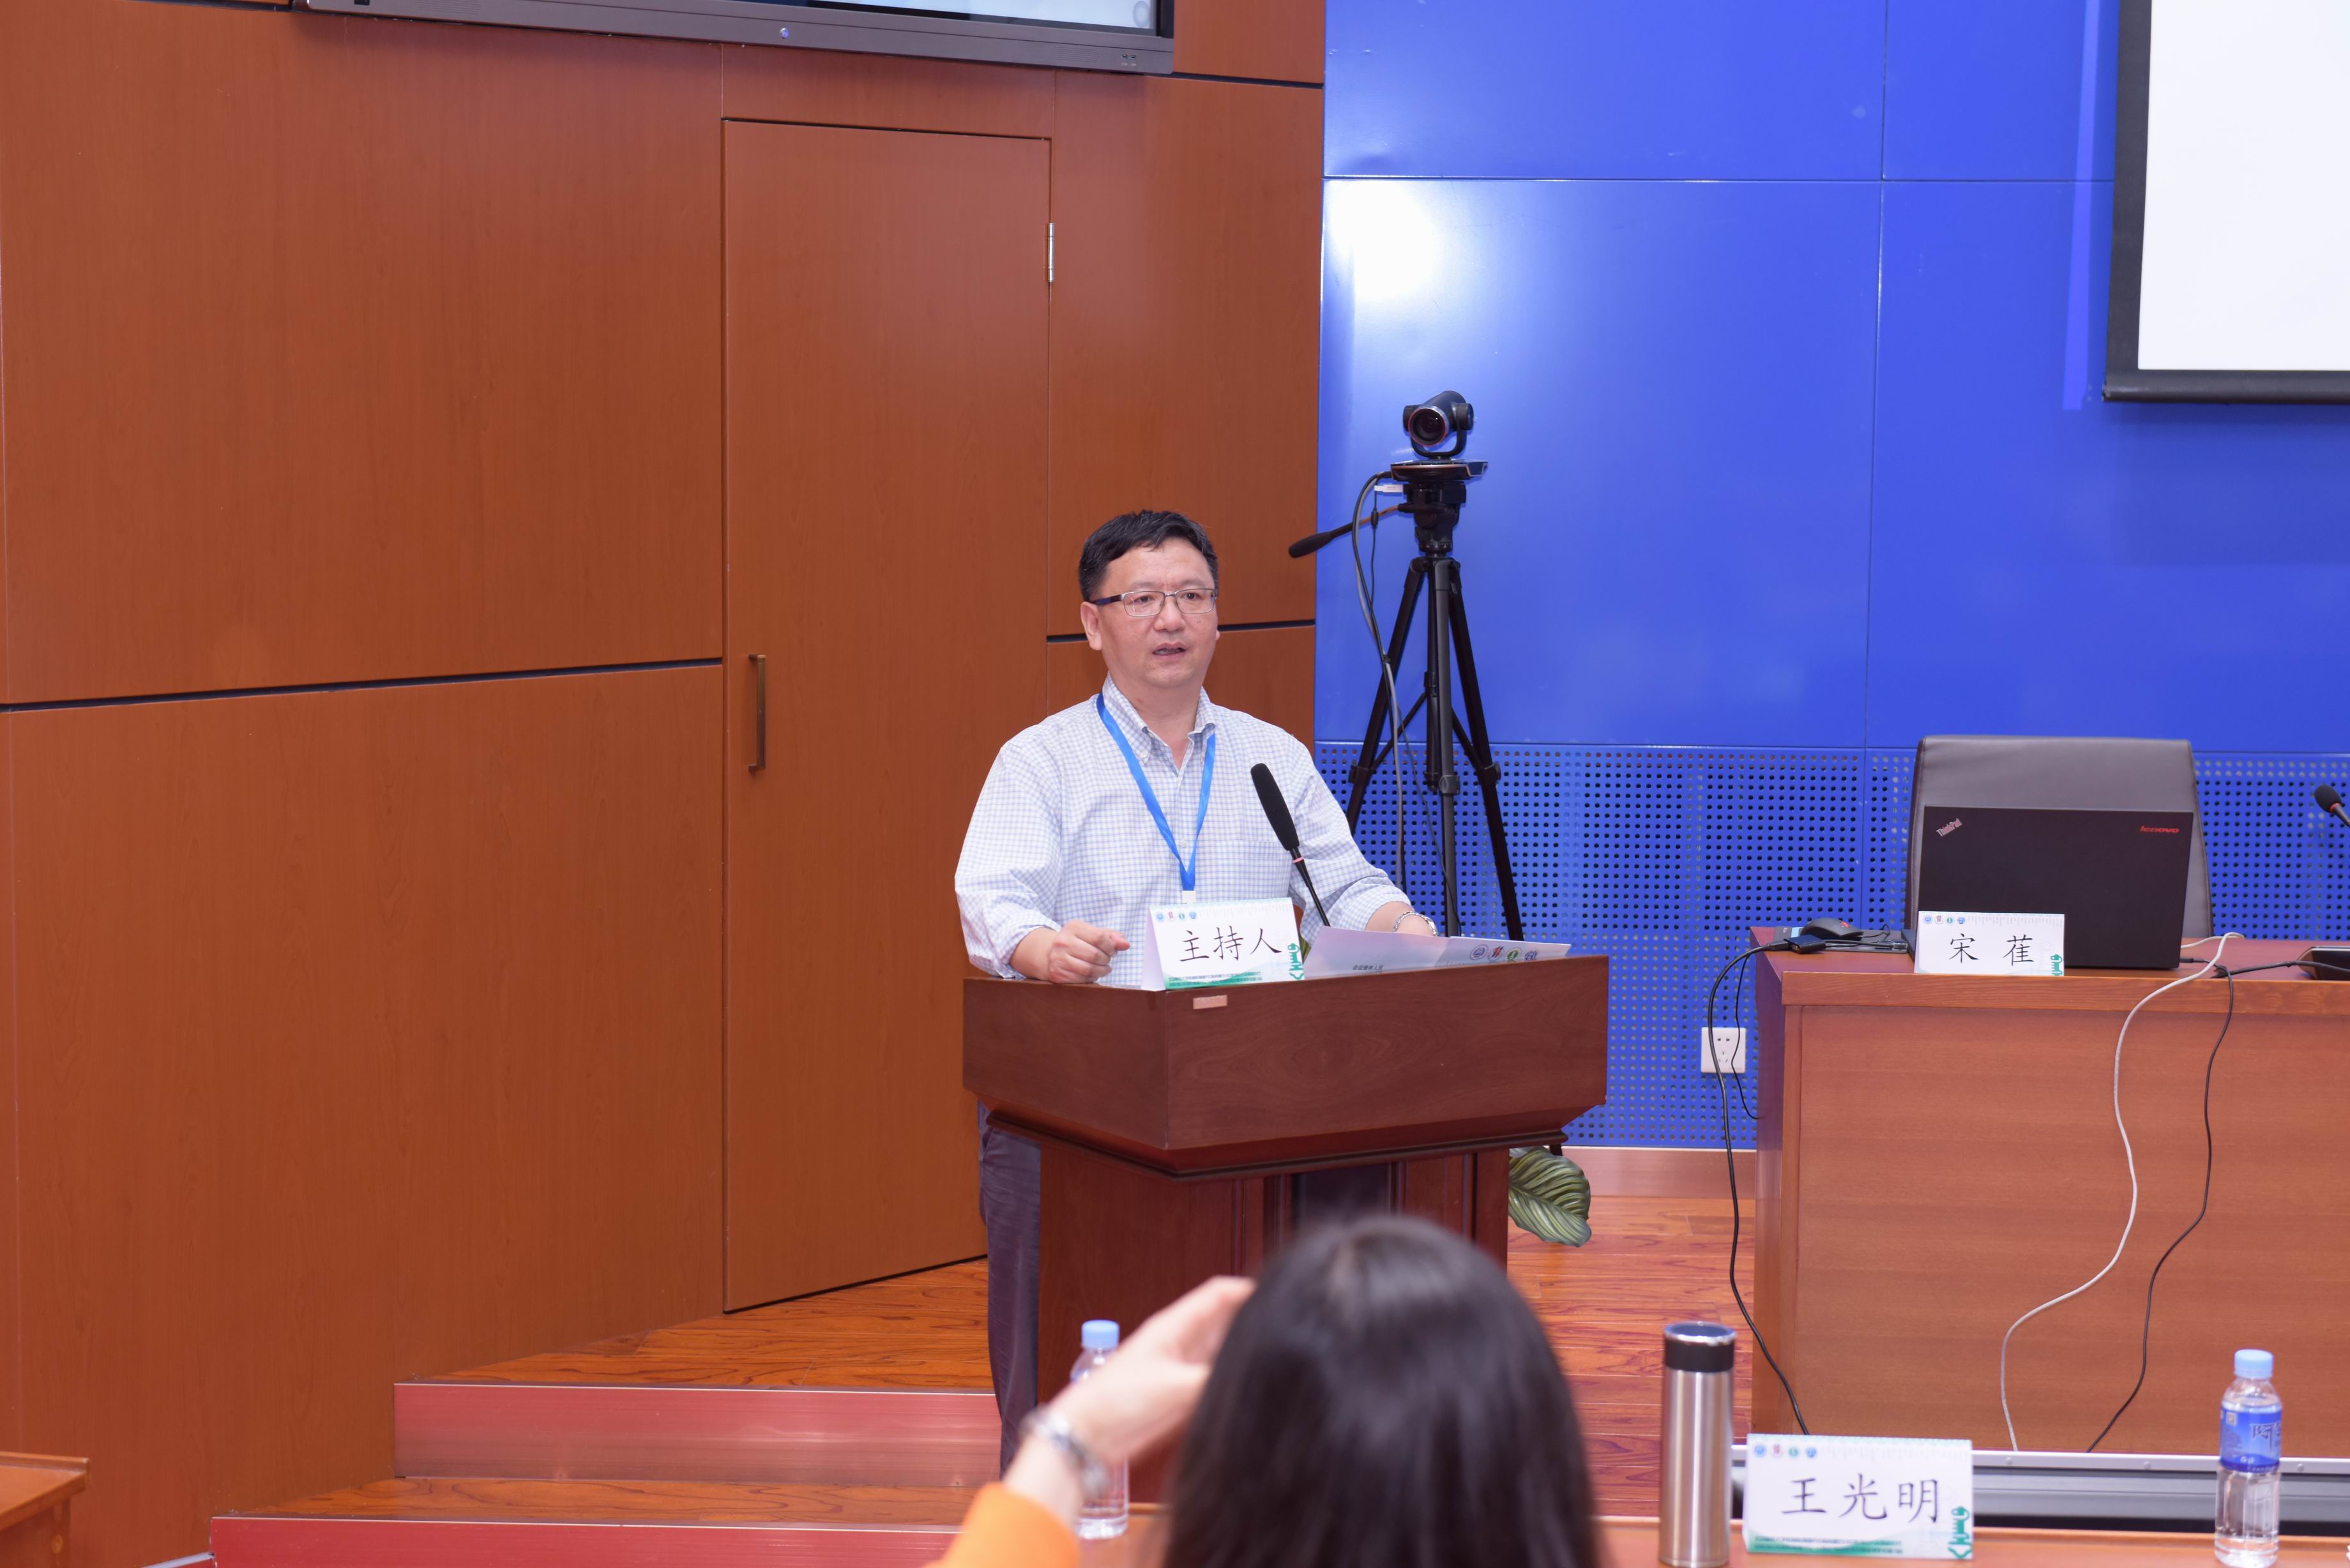 天津师范大学教育学部部长王光明教授主持下午前半场学术报告会